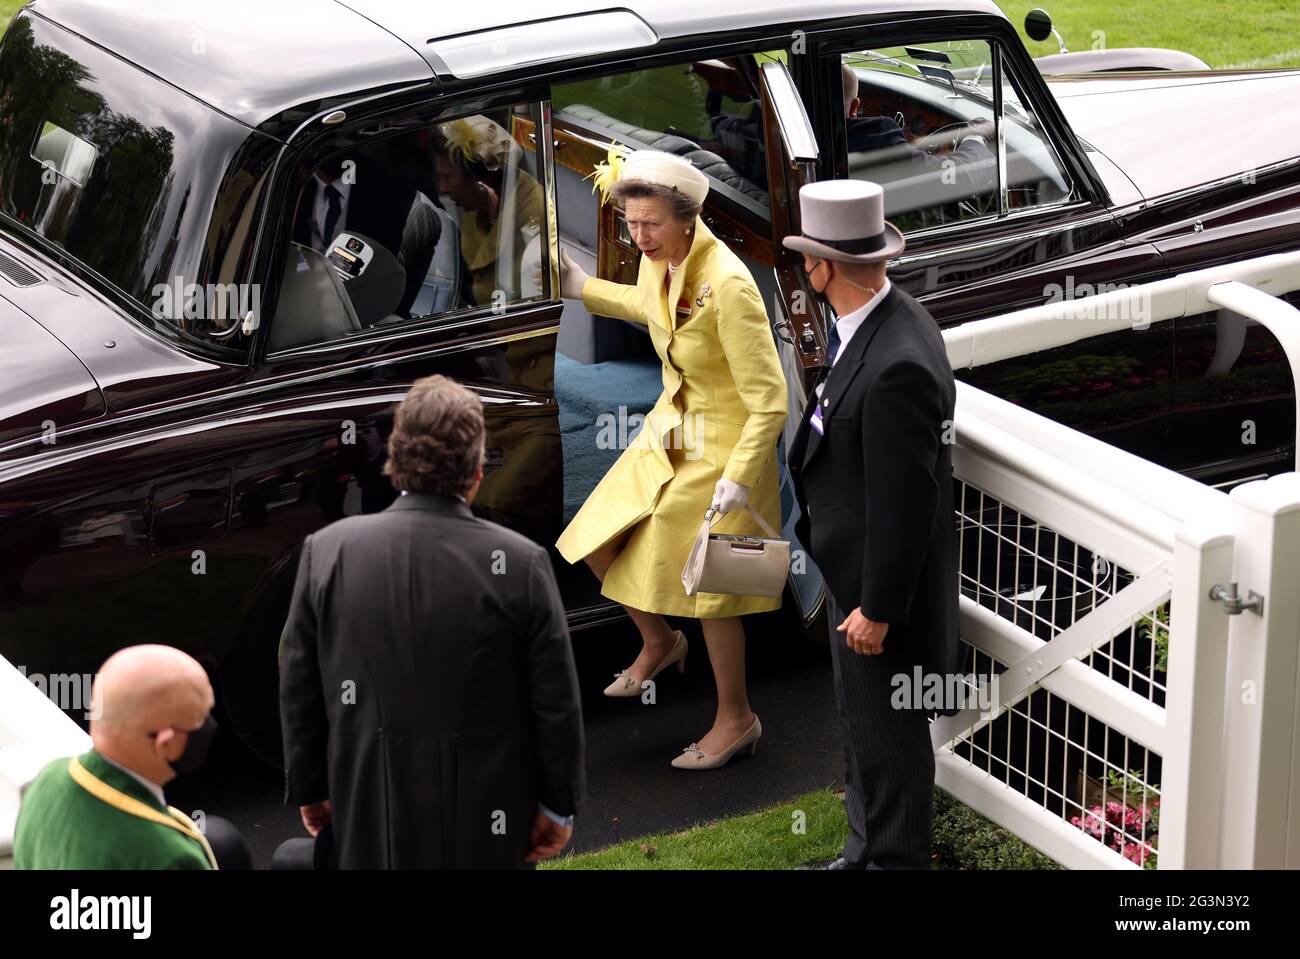 La principessa reale arriva per il terzo giorno di Ascot reale all'Ippodromo di Ascot. Data immagine: Giovedì 17 giugno 2021. Foto Stock